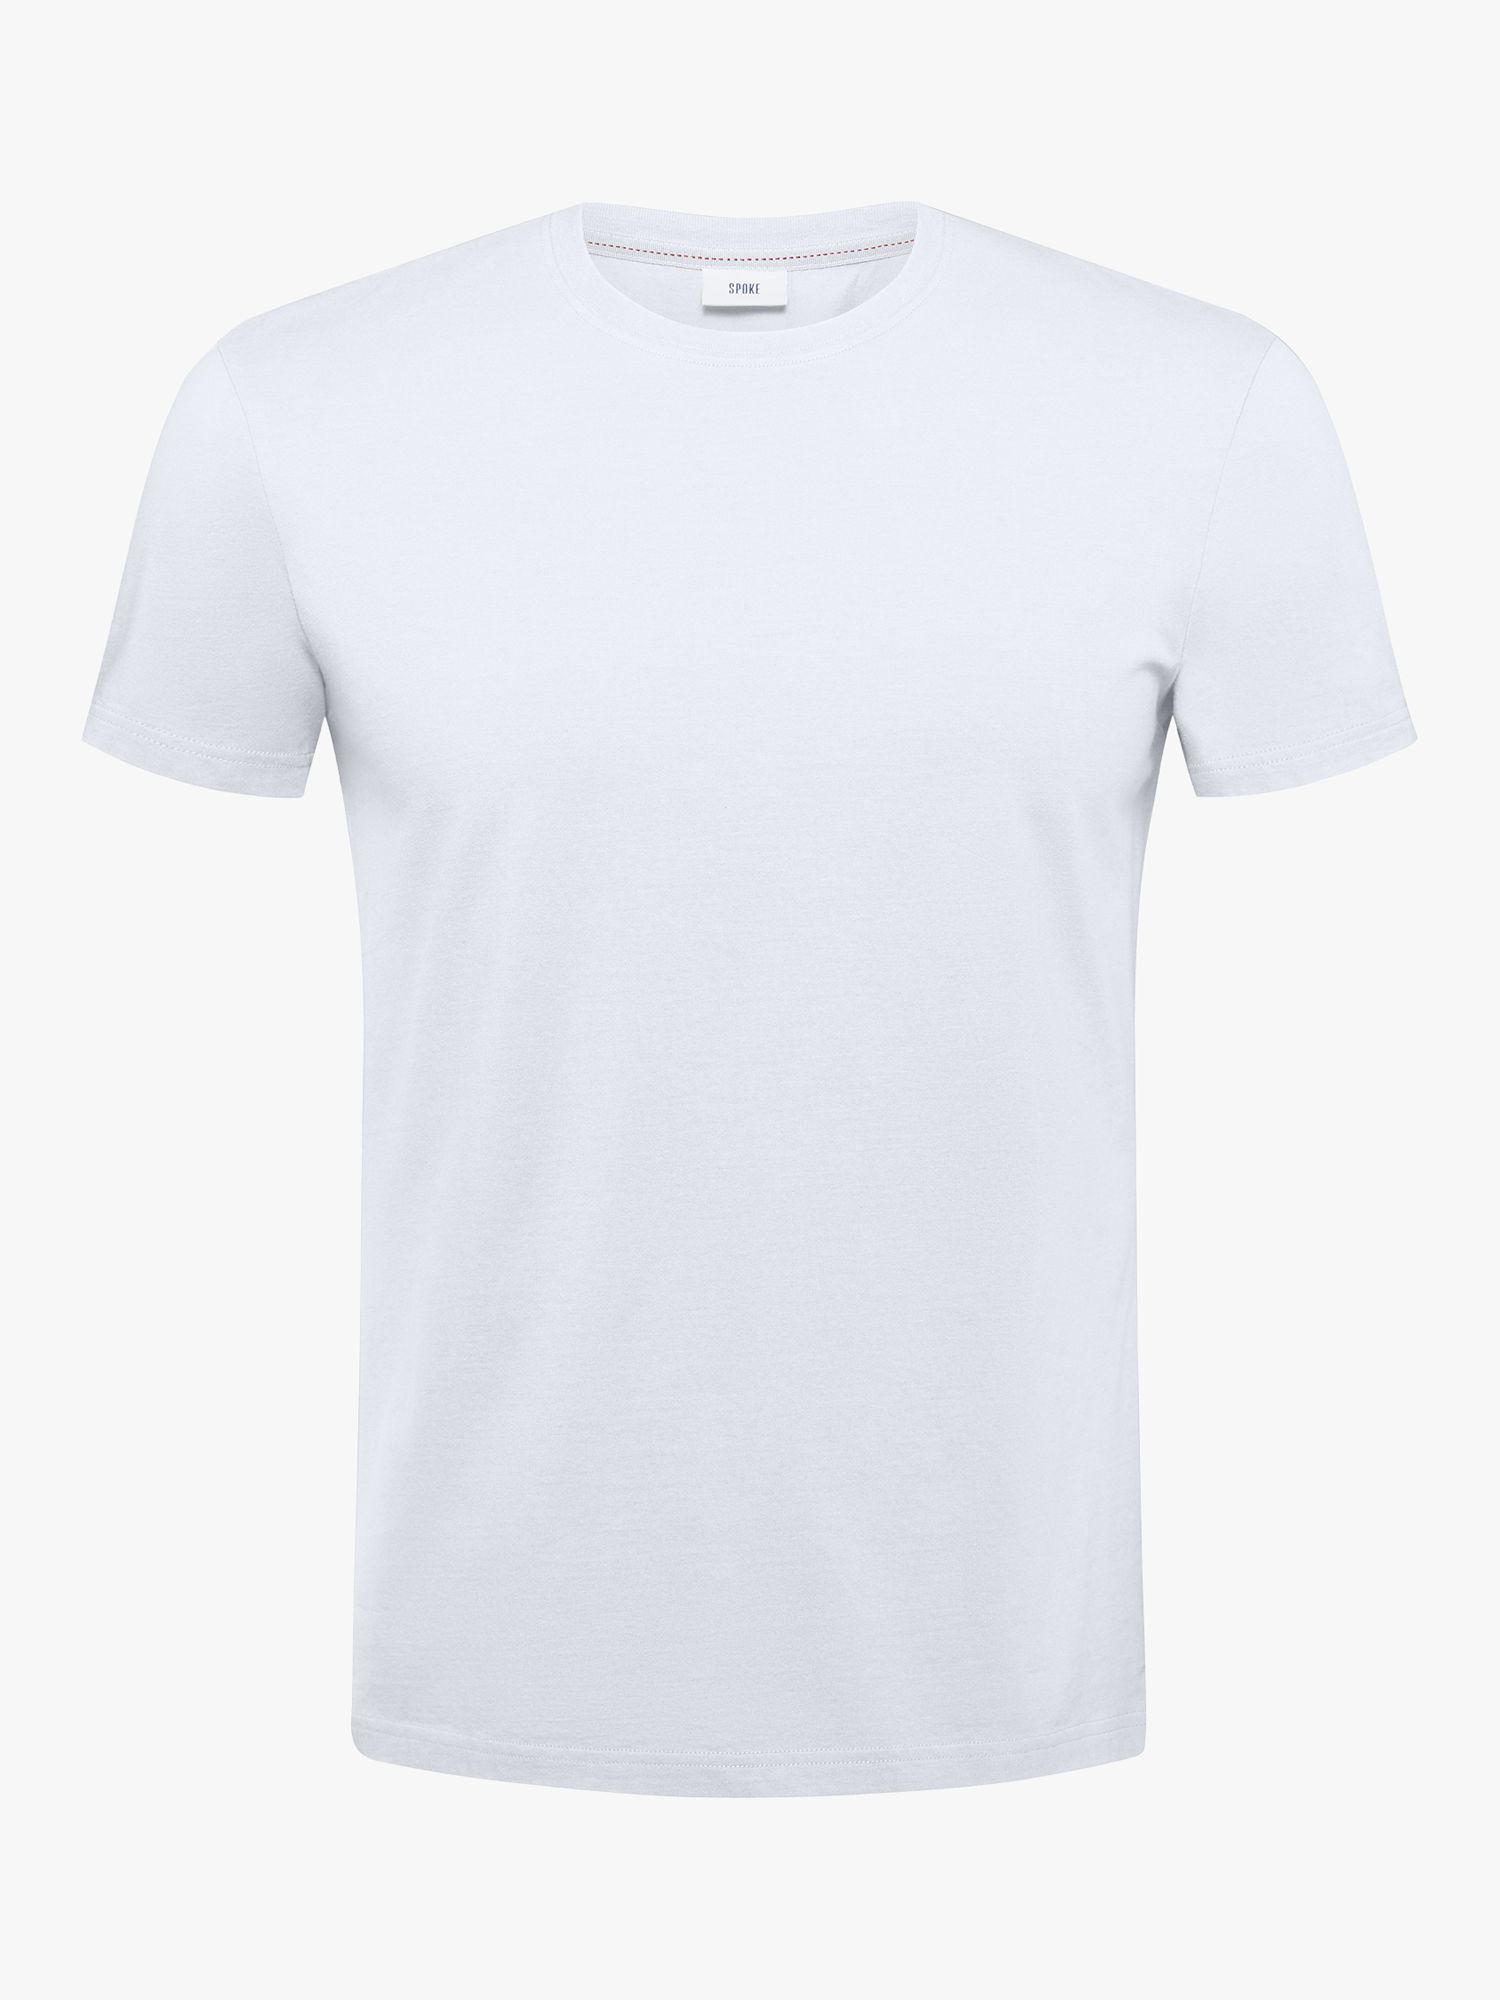 Хлопковая футболка прямого кроя с круглым вырезом SPOKE, белая